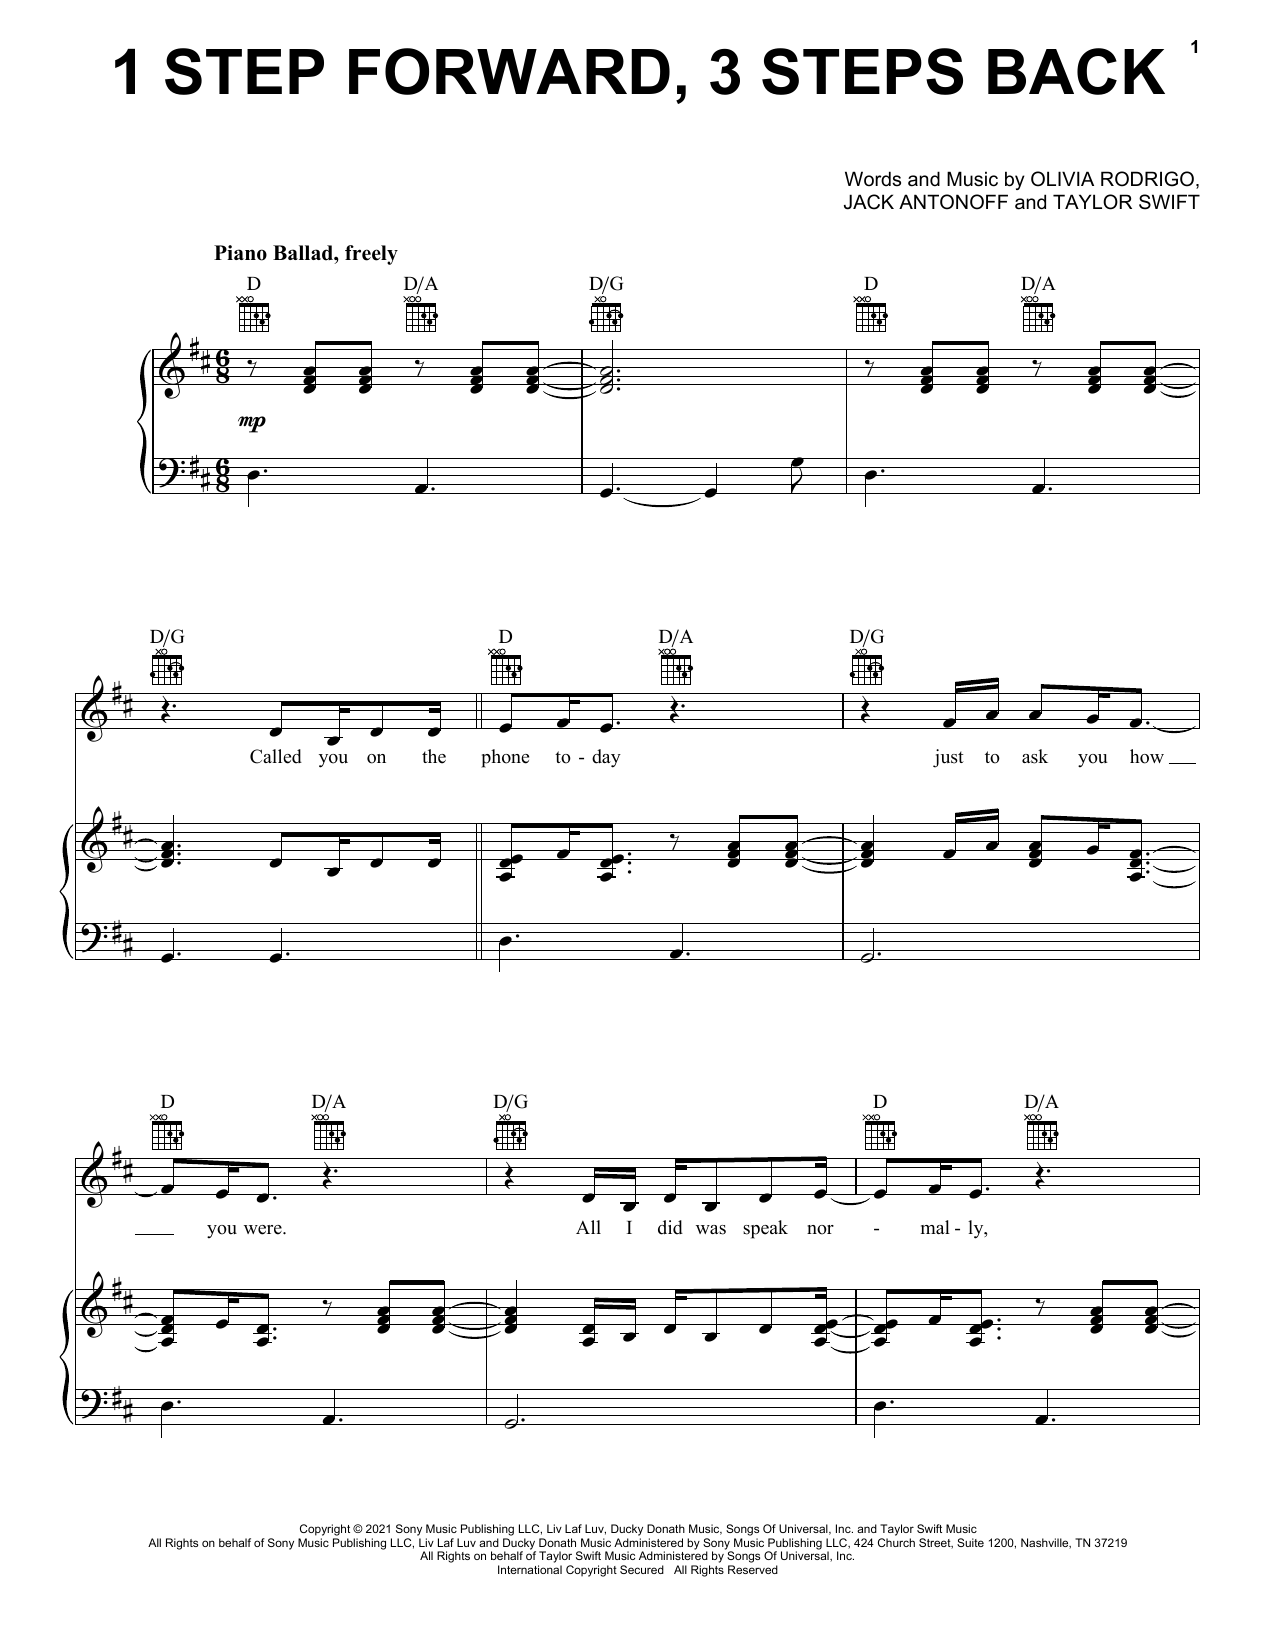 Olivia Rodrigo 1 step forward, 3 steps back Sheet Music Notes & Chords for Ukulele - Download or Print PDF